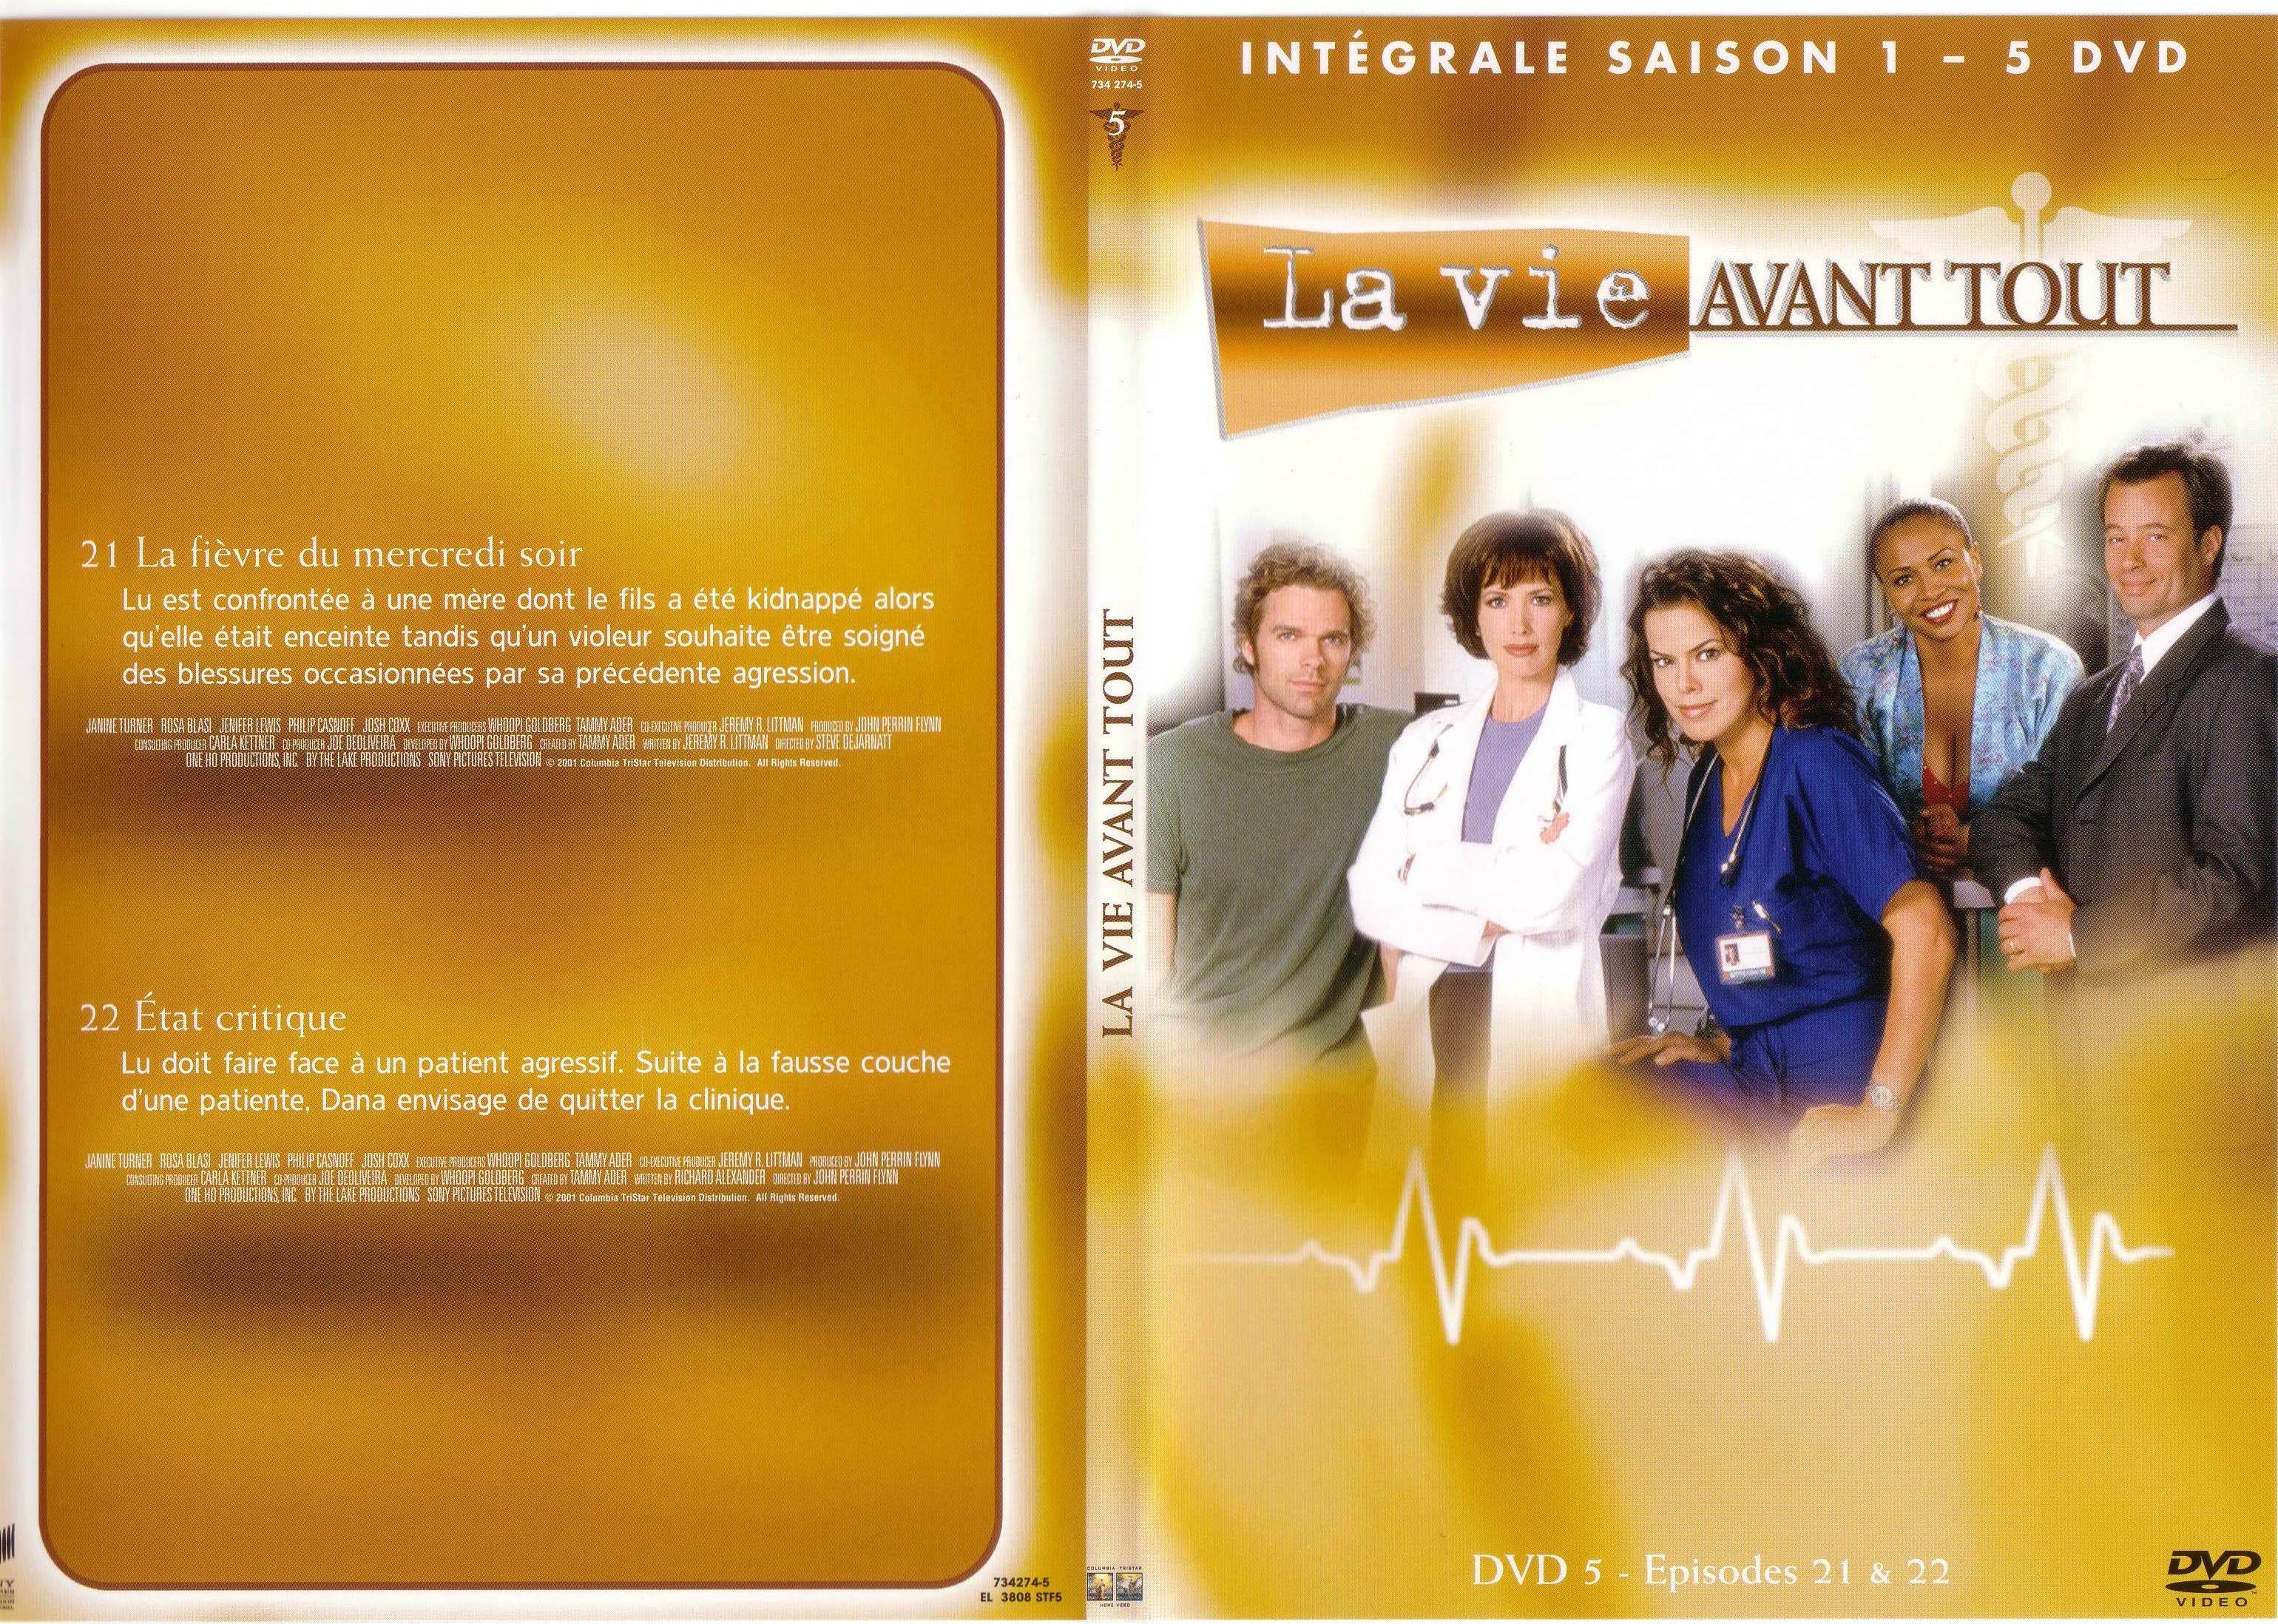 Jaquette DVD La vie avant tout Saison 1 vol 5